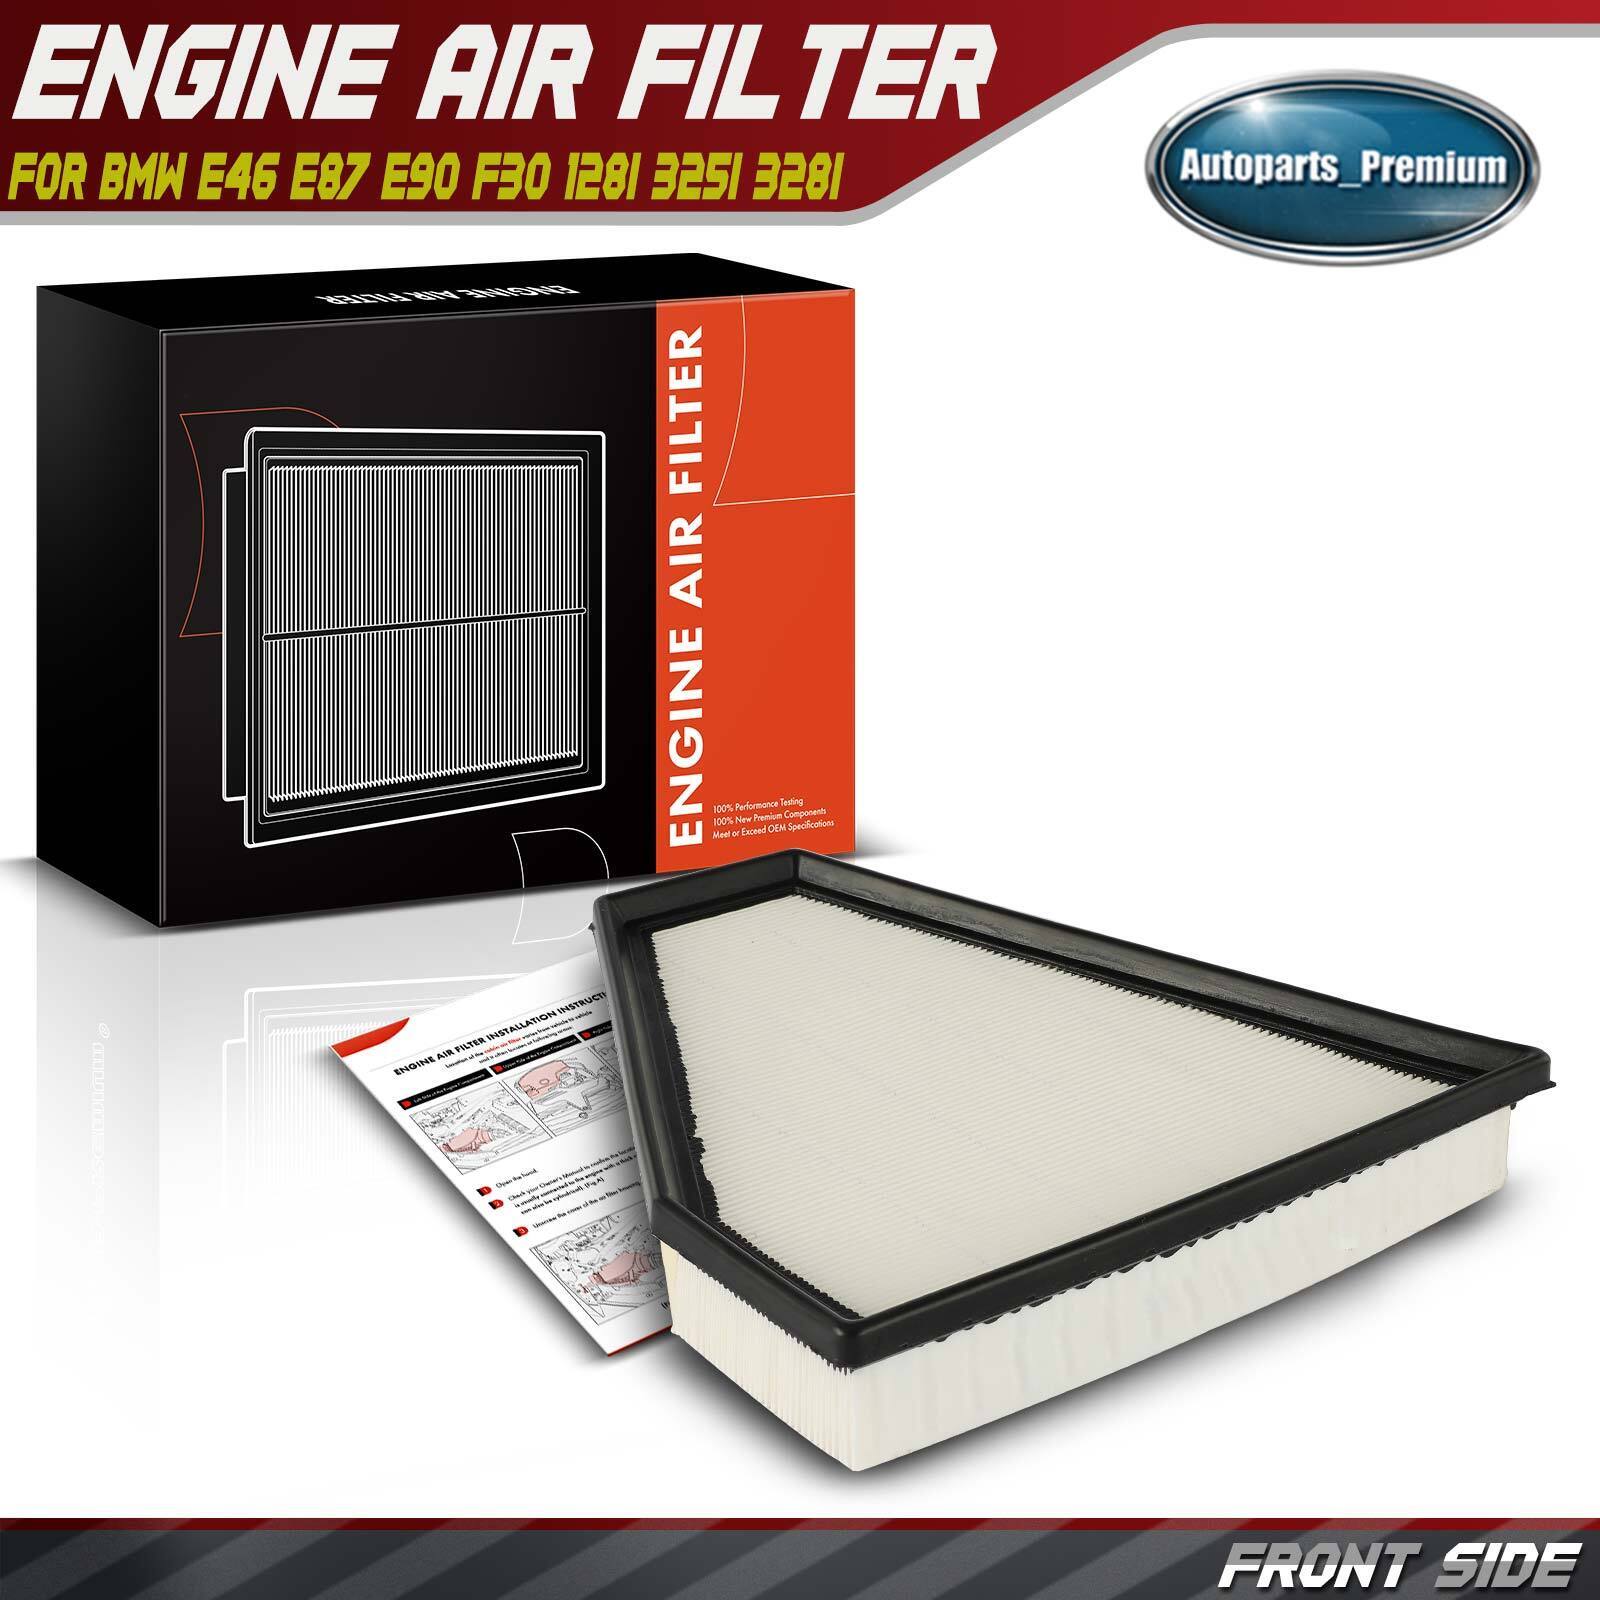 Engine Air Filter for BMW E46 E87 E90 F30 128i 325i 328i xDrive 330Ci L6 3.0L